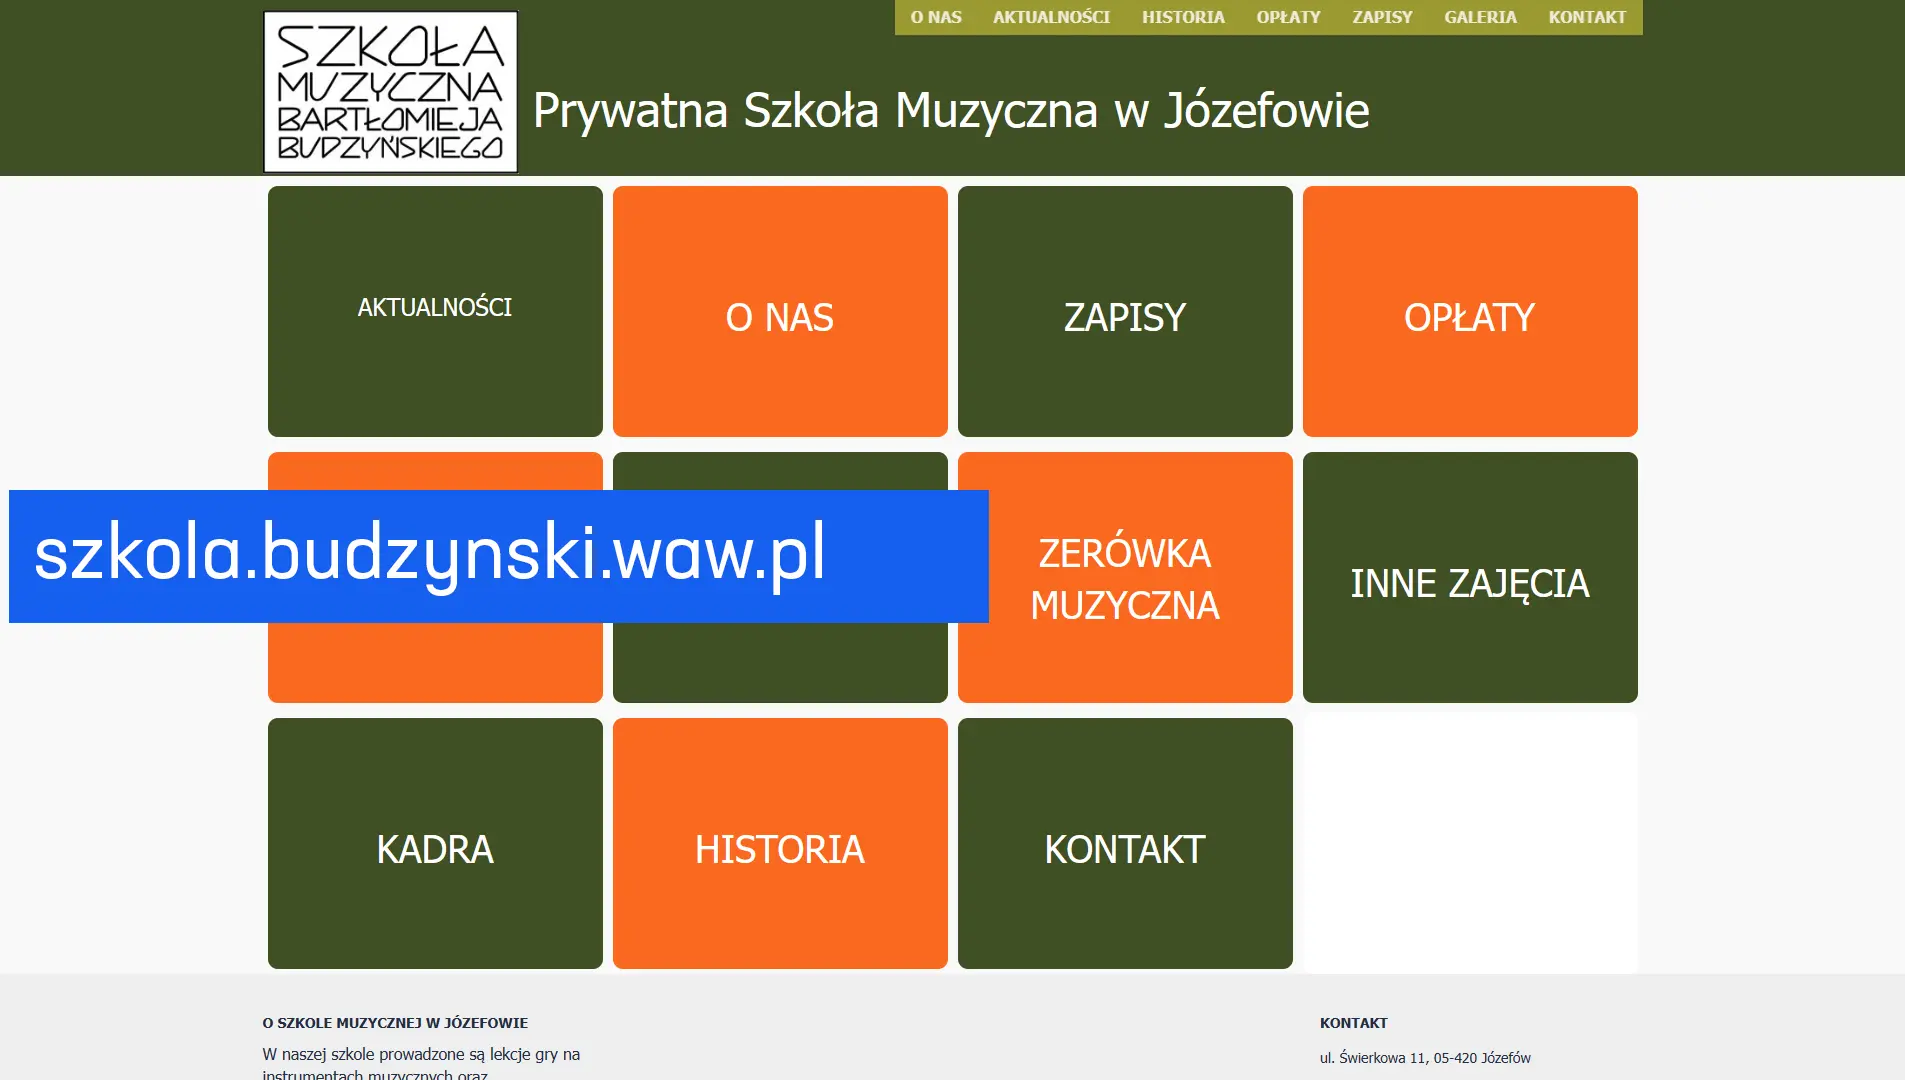 www.szkola.budzynski.waw.pl